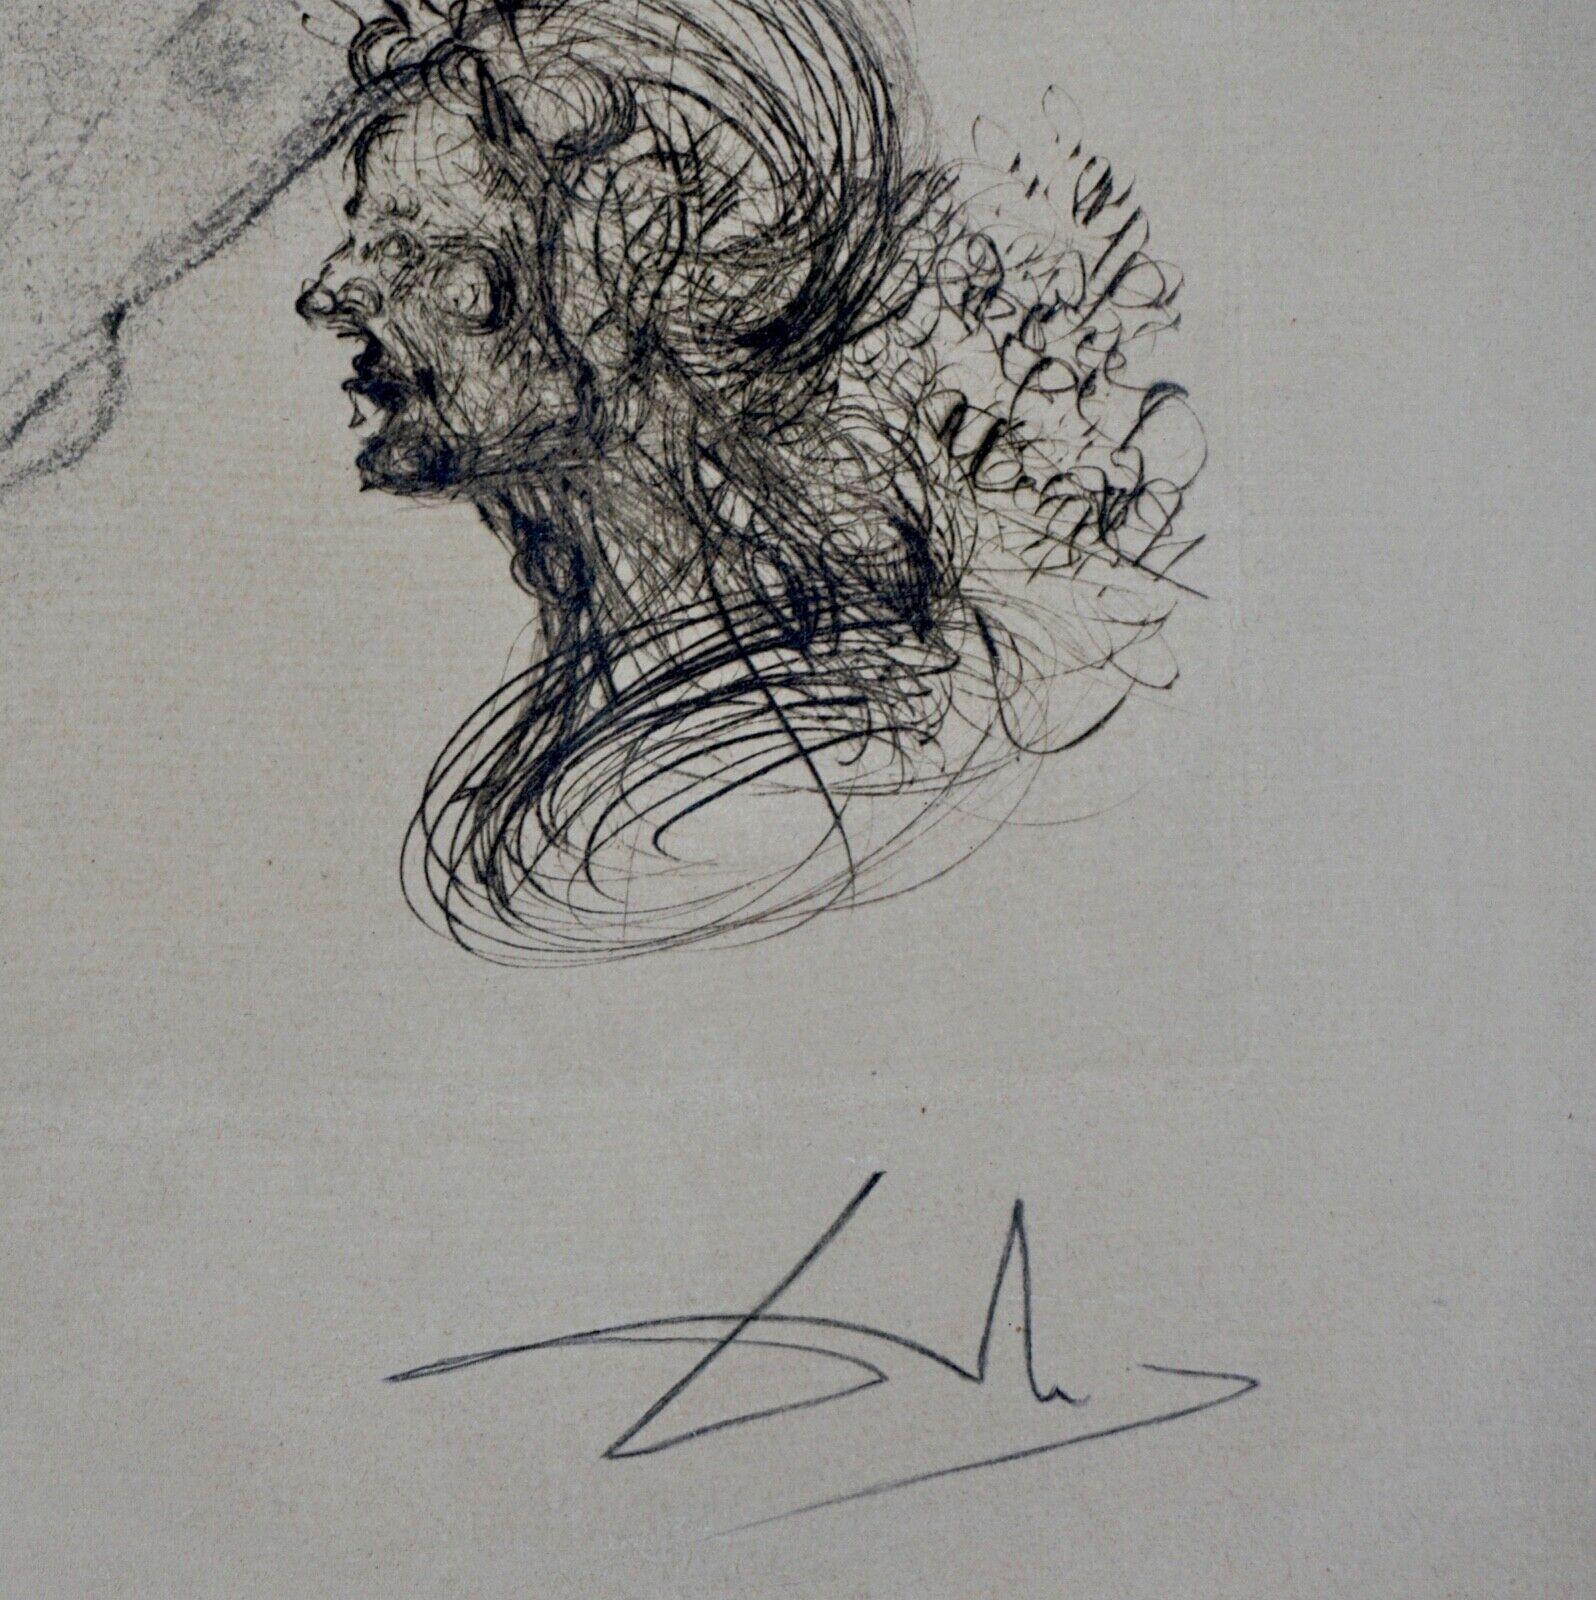 KÜNSTLER: Salvador Dali

TITEL: Porträt von Picasso

MEDIUM: Radierung

SIGNIERT: Handsigniert 

AUFLAGENNUMMER:  a/b 66/200

MASSNAHMEN: 19